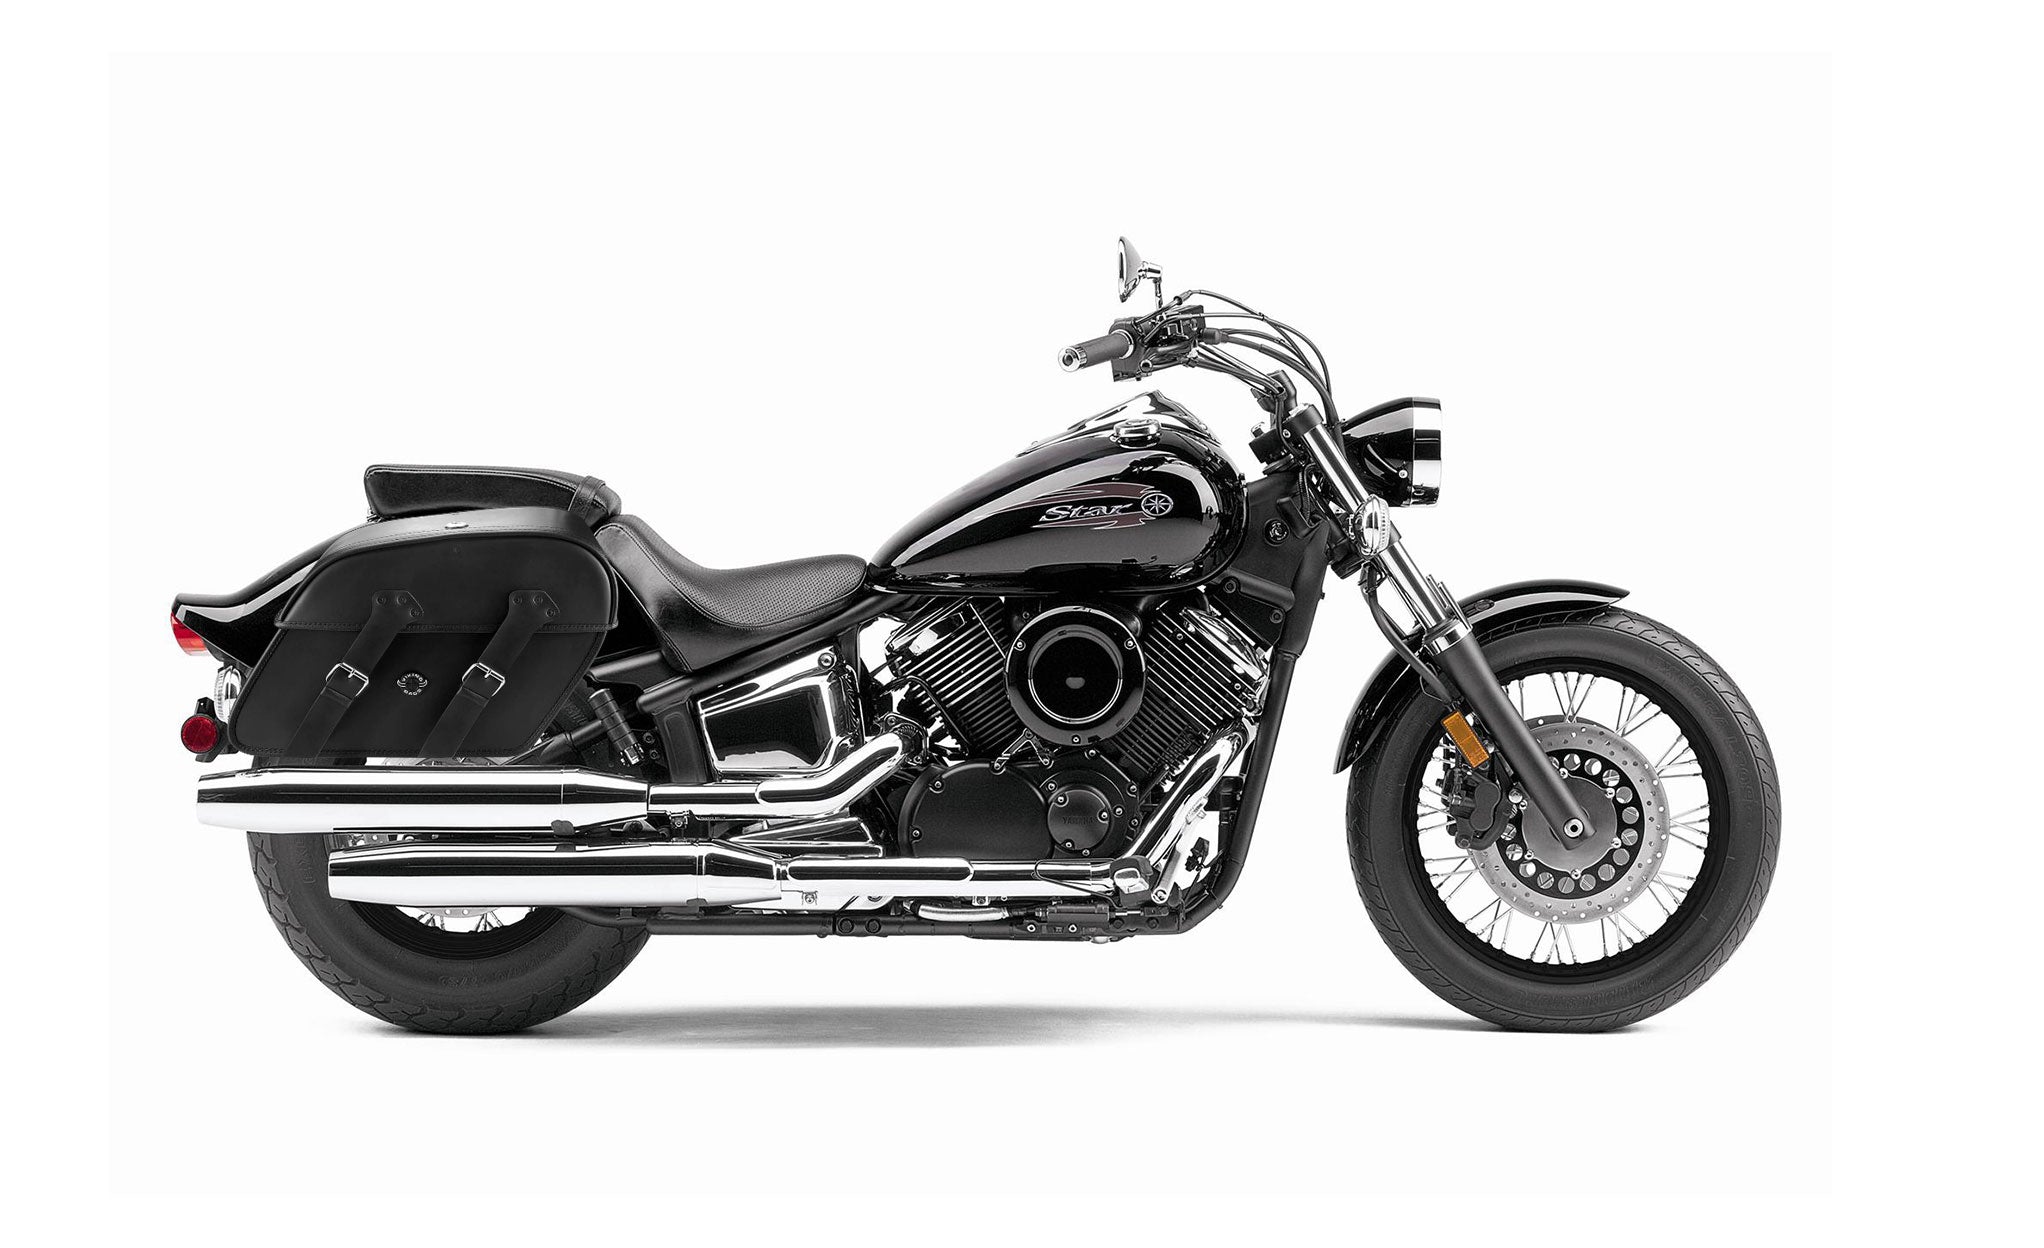 Viking Raven Extra Large Yamaha V Star 1100 Custom Xvs11T Leather Motorcycle Saddlebags on Bike Photo @expand